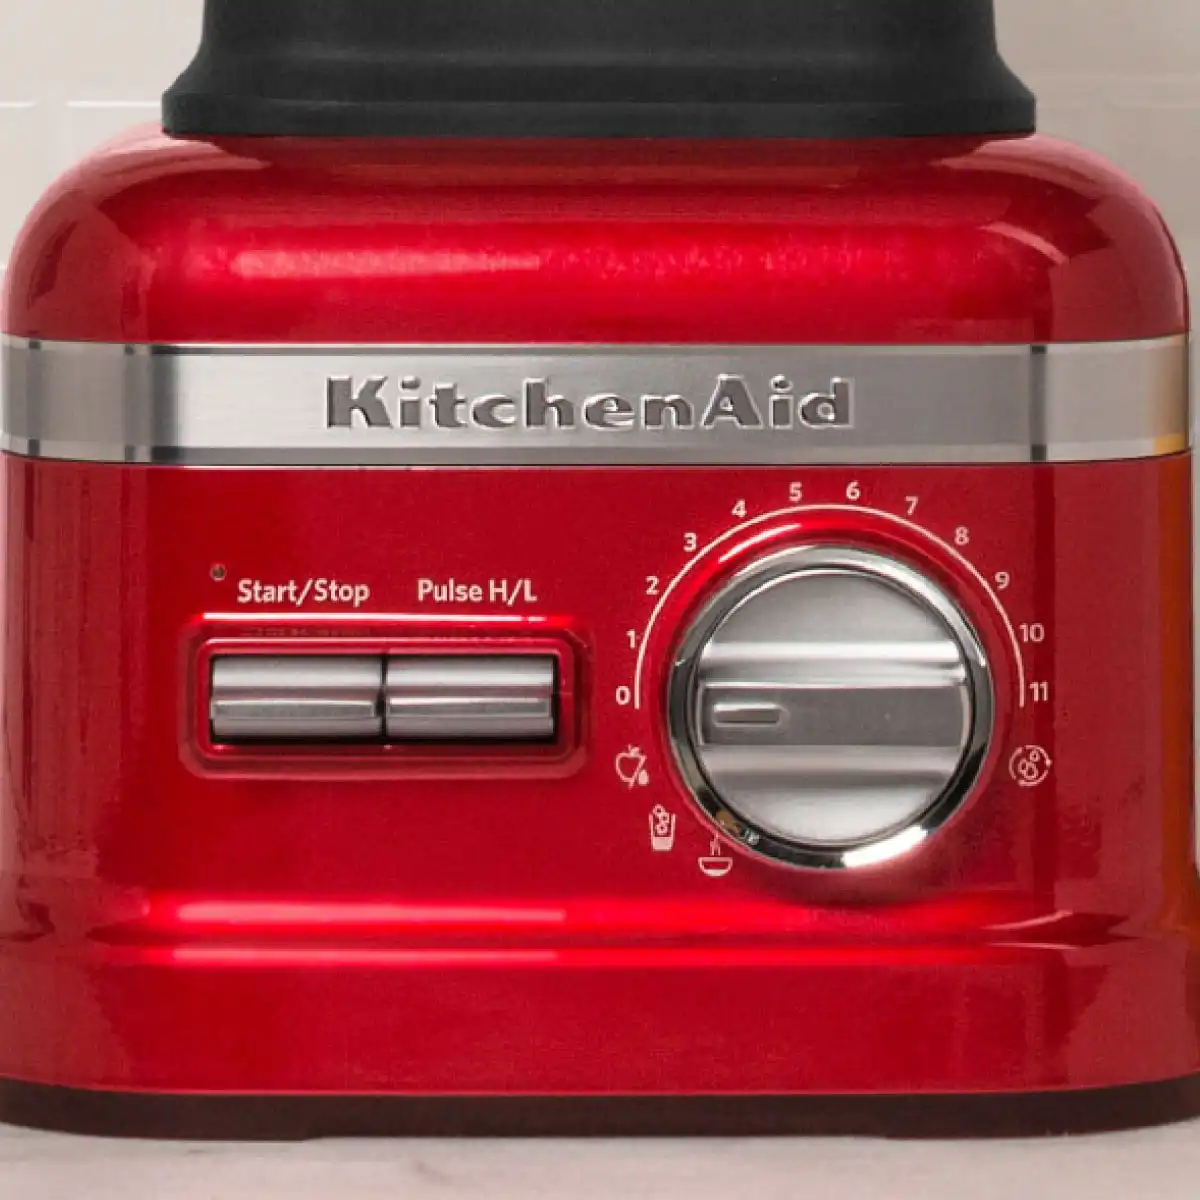 Kitchenaid Artisan Power Plus